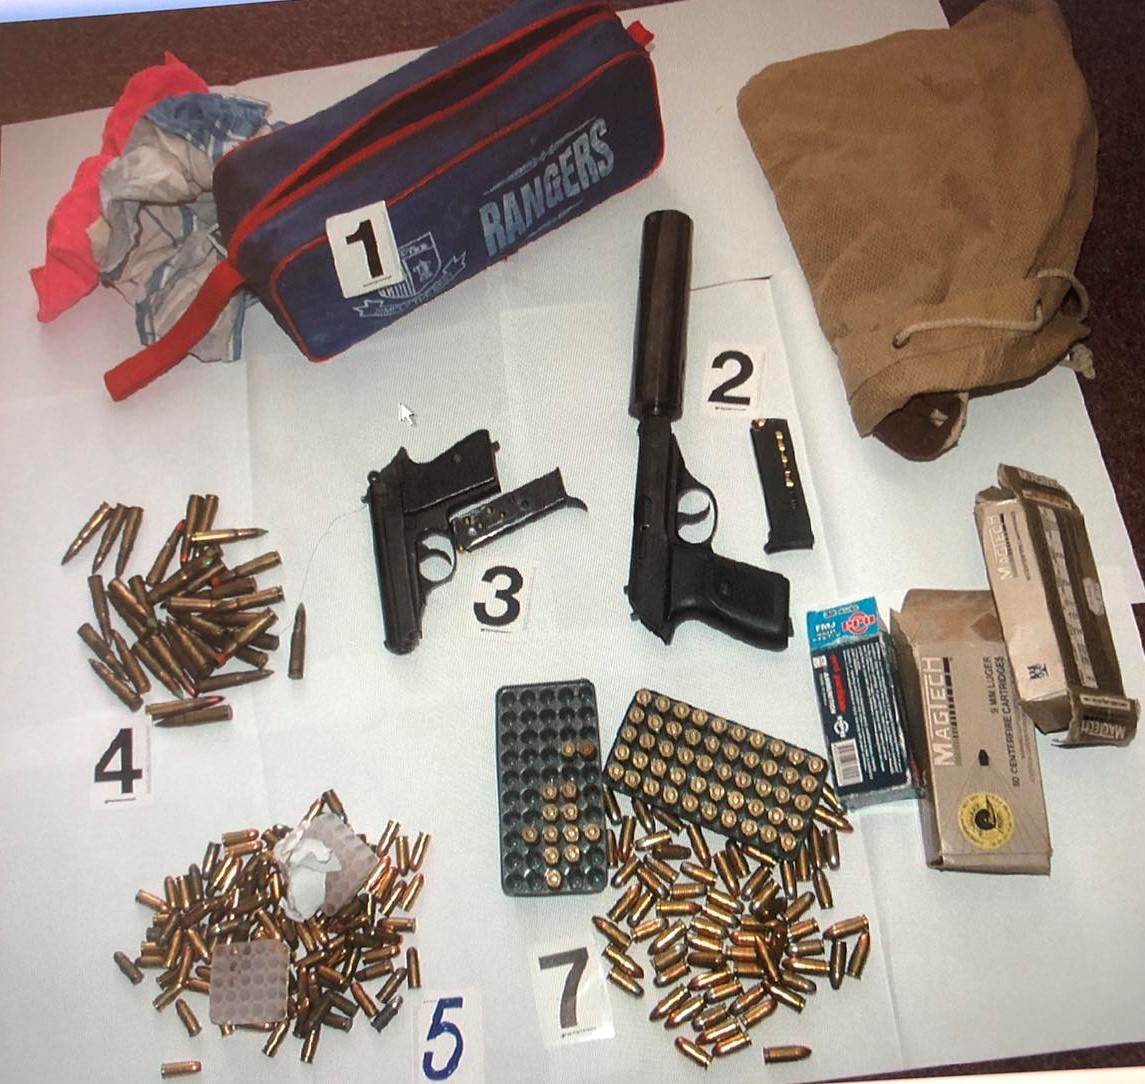  Uhapšen Ulcinjanin, pronađena dva pištolja i skoro 300 komada municije 